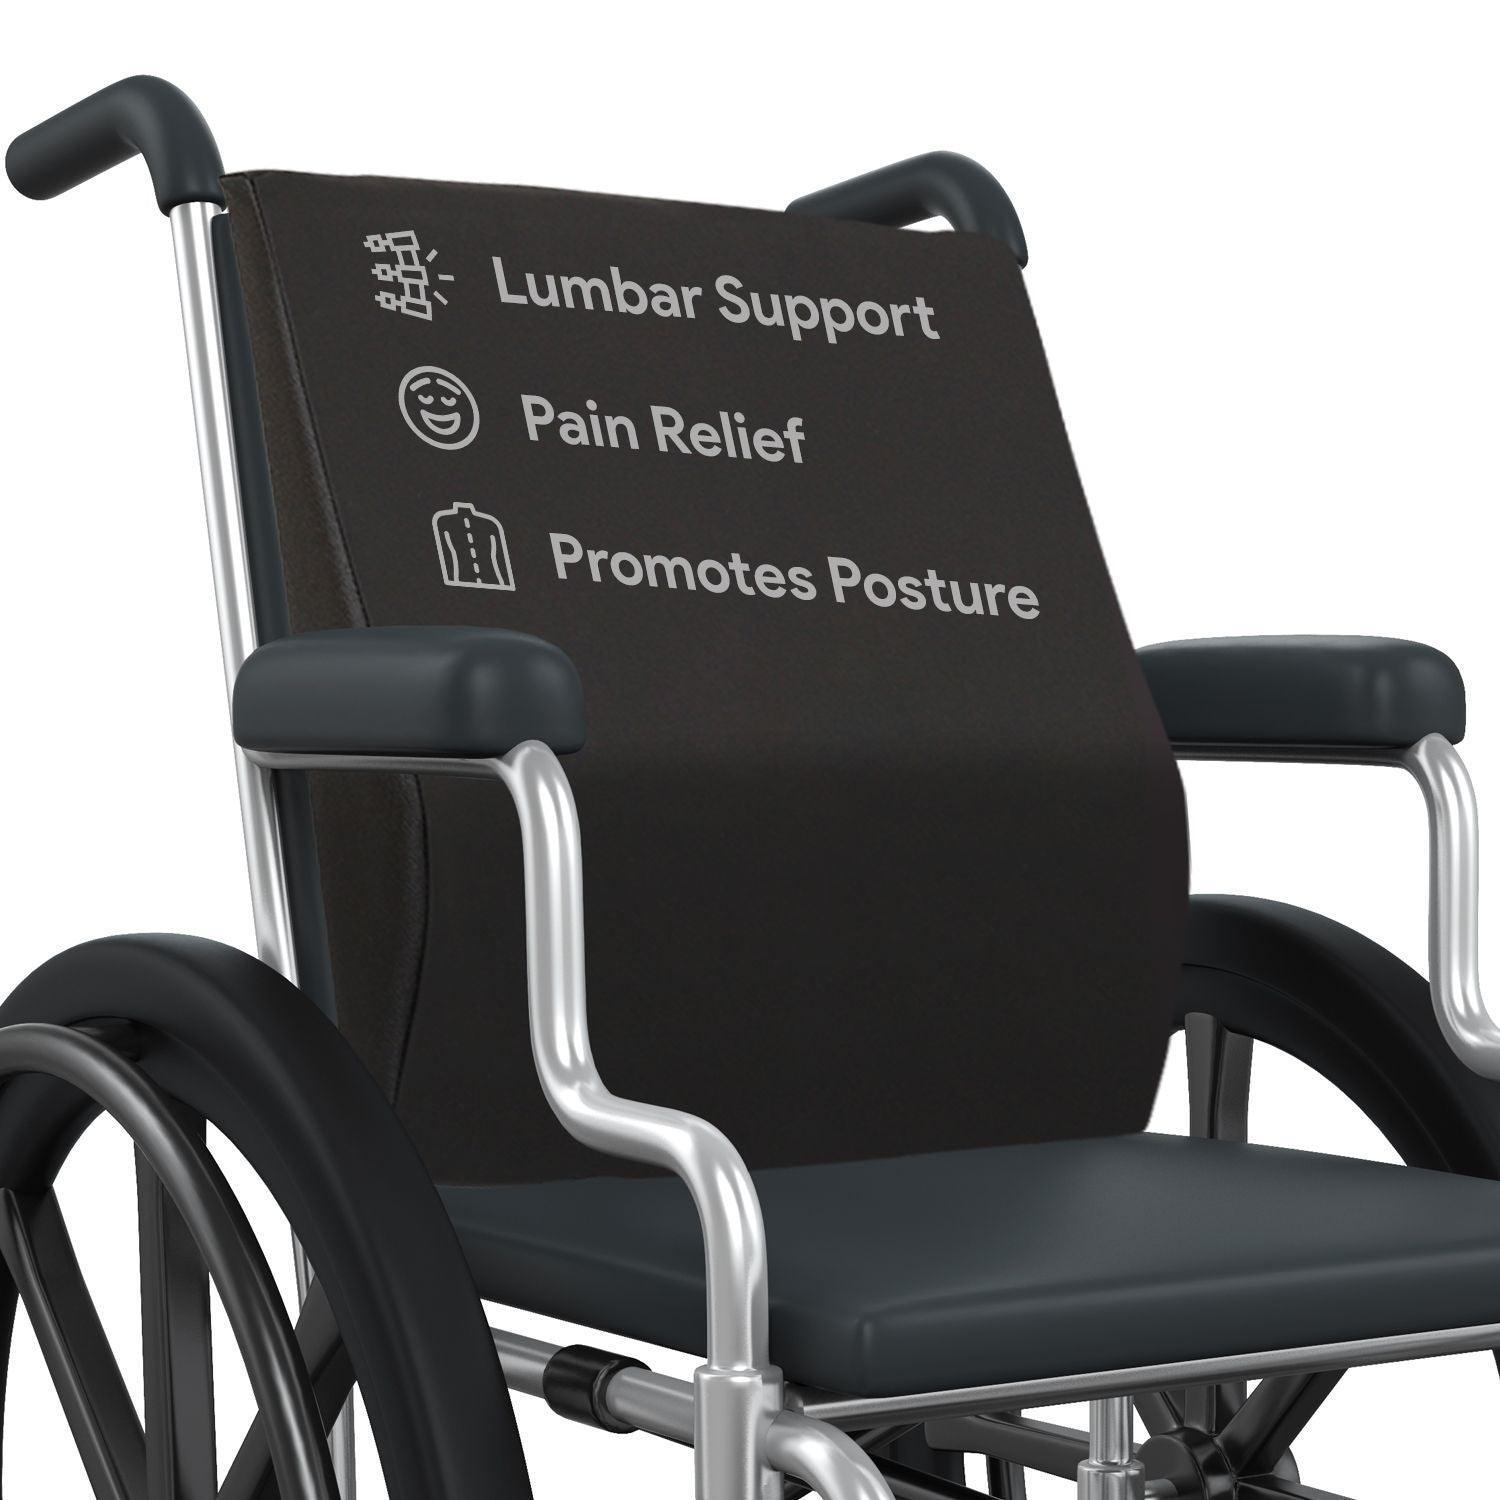 http://shophomemed.com/cdn/shop/files/wheelchair-lumbar-pillow-shop-home-med-1.jpg?v=1692284474